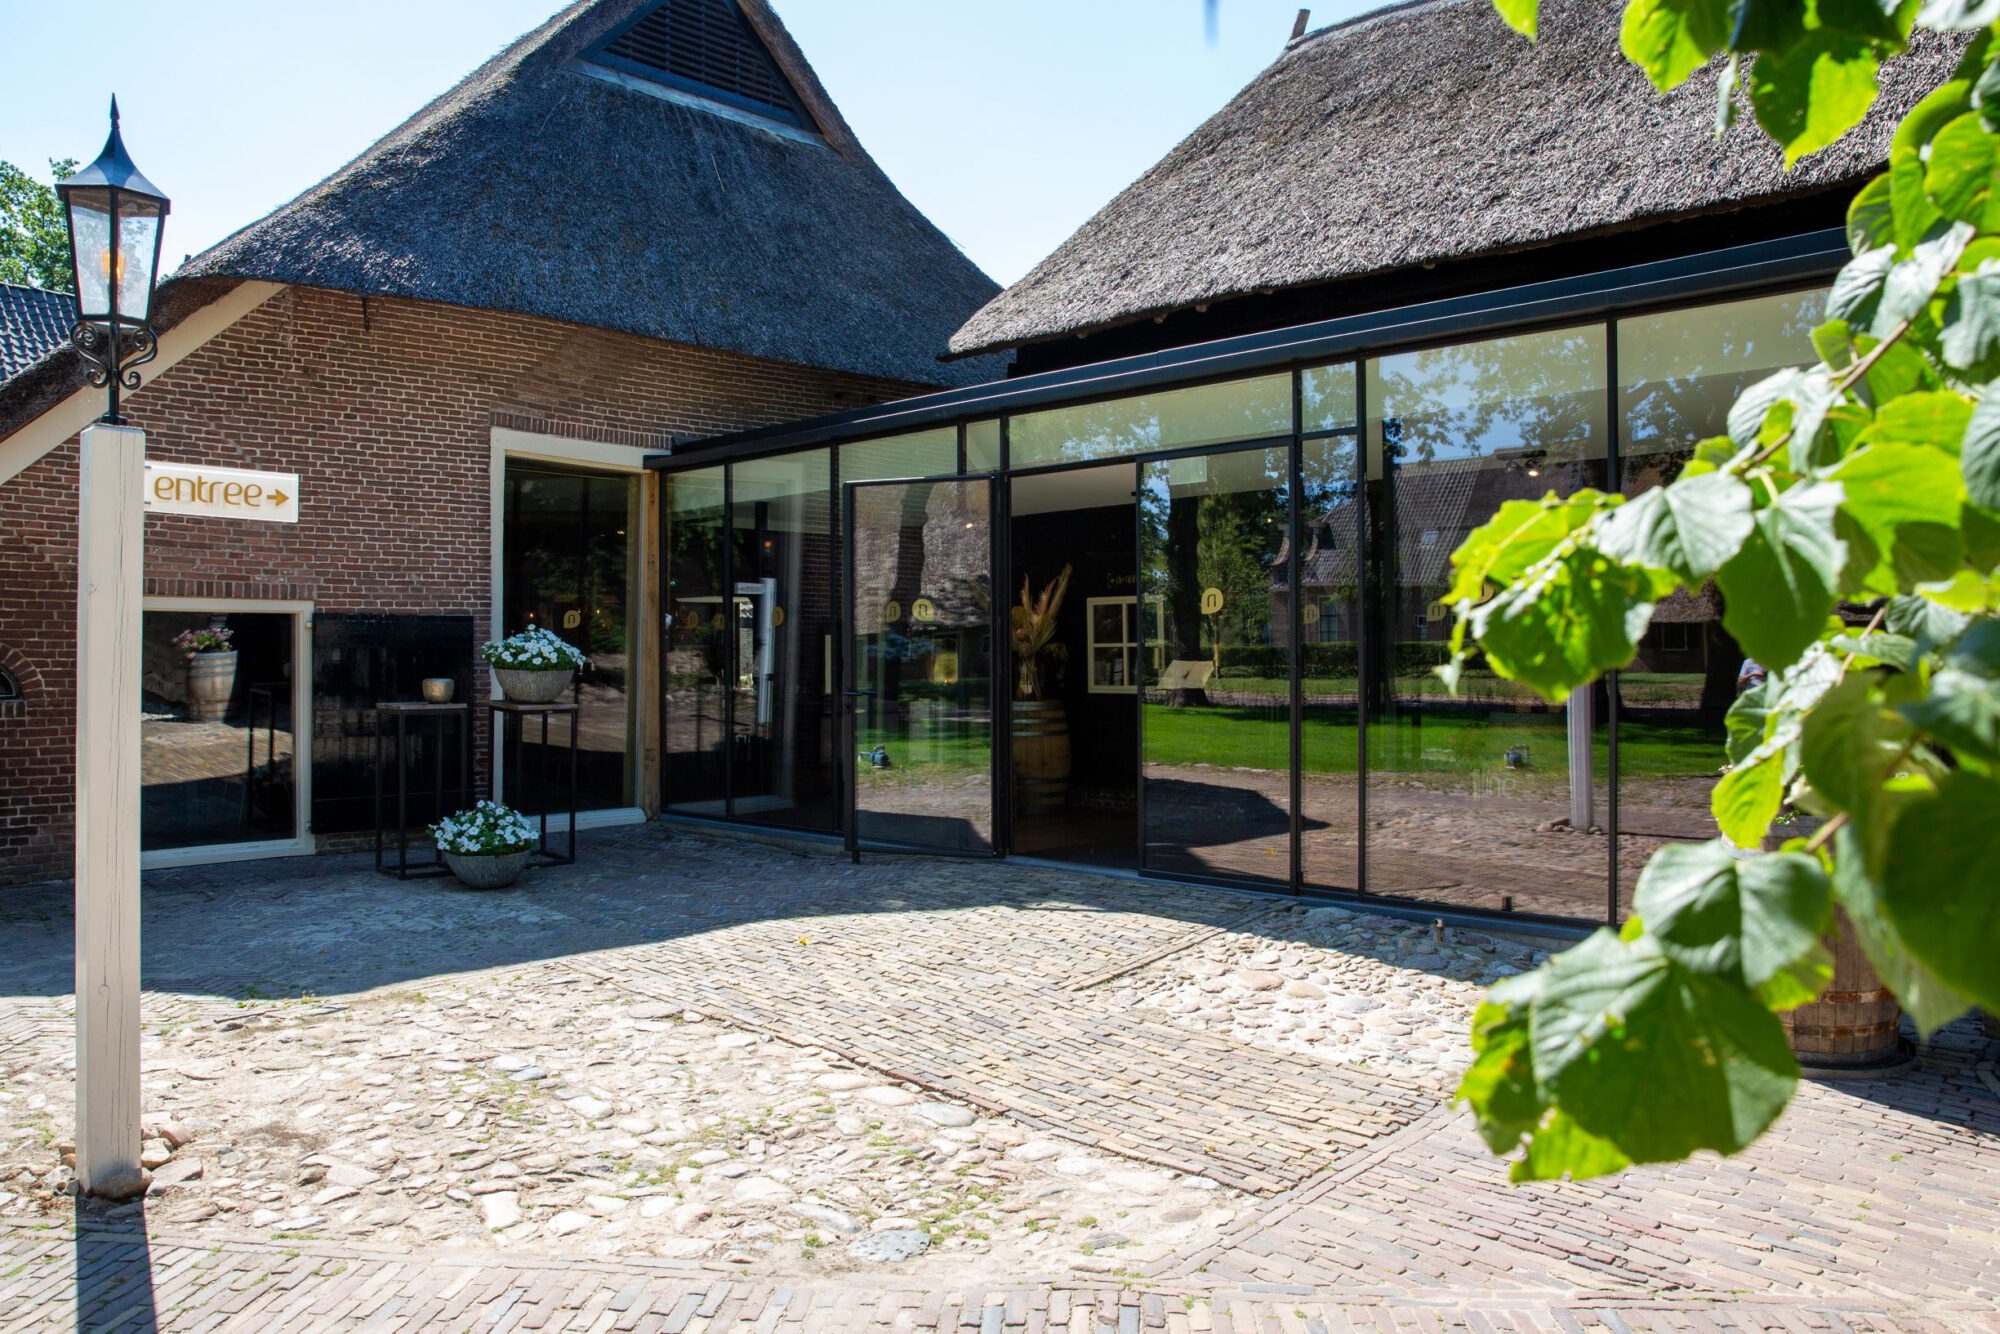 De nieuwe ingang van restaurant Narline in Zuidwolde, Drenthe. Rijksmomumentale boerderij uit 1768.